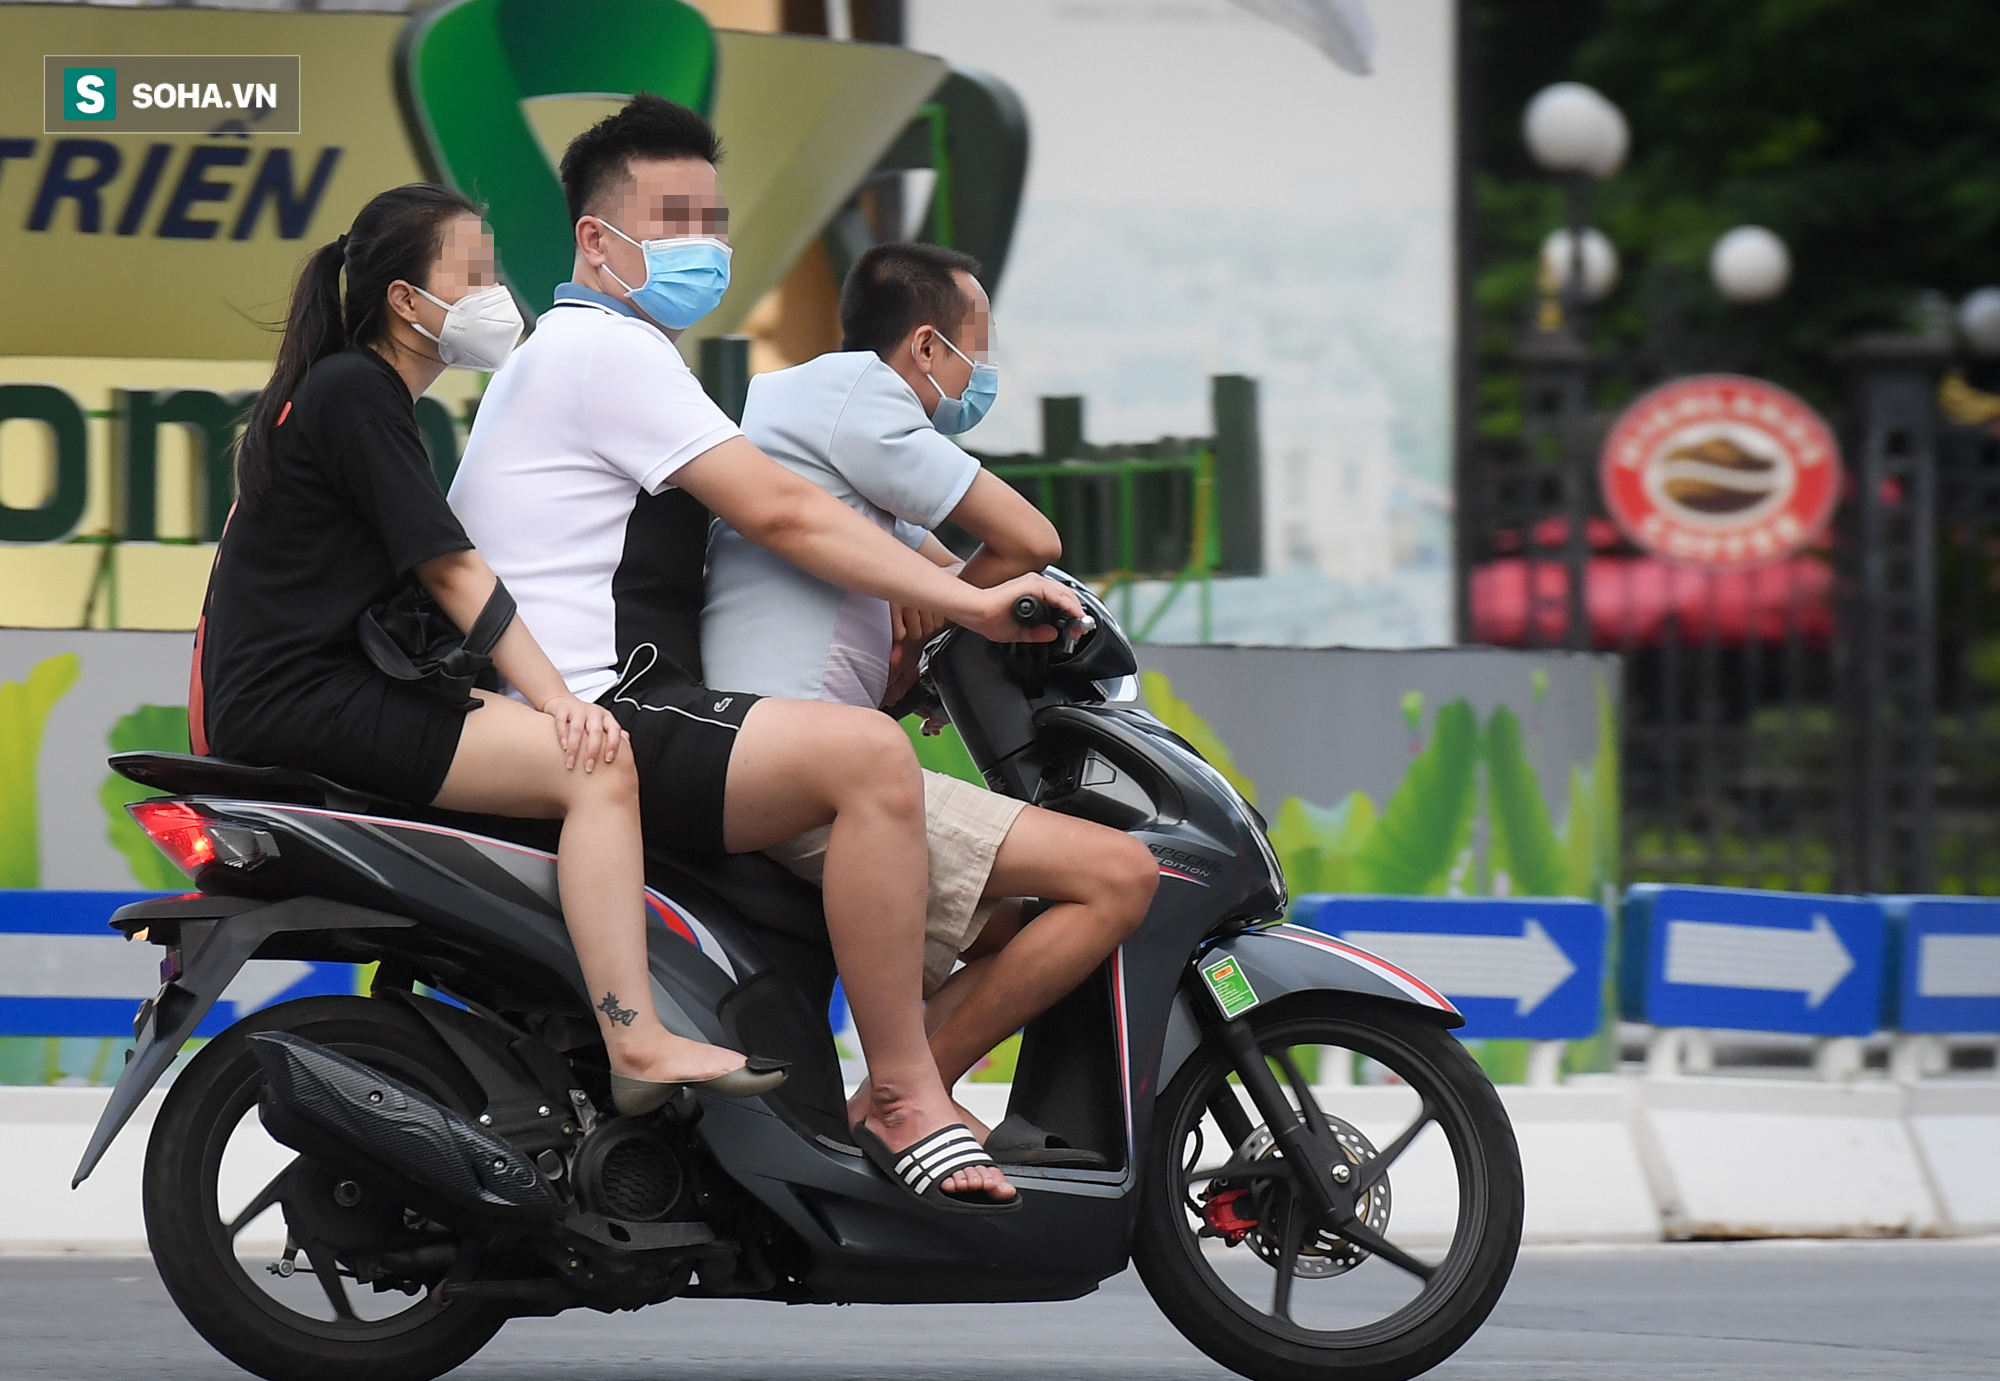 Ra đường mùa dịch: Nhiều người ở Hà Nội nhớ khẩu trang nhưng quên luật giao thông - Ảnh 2.